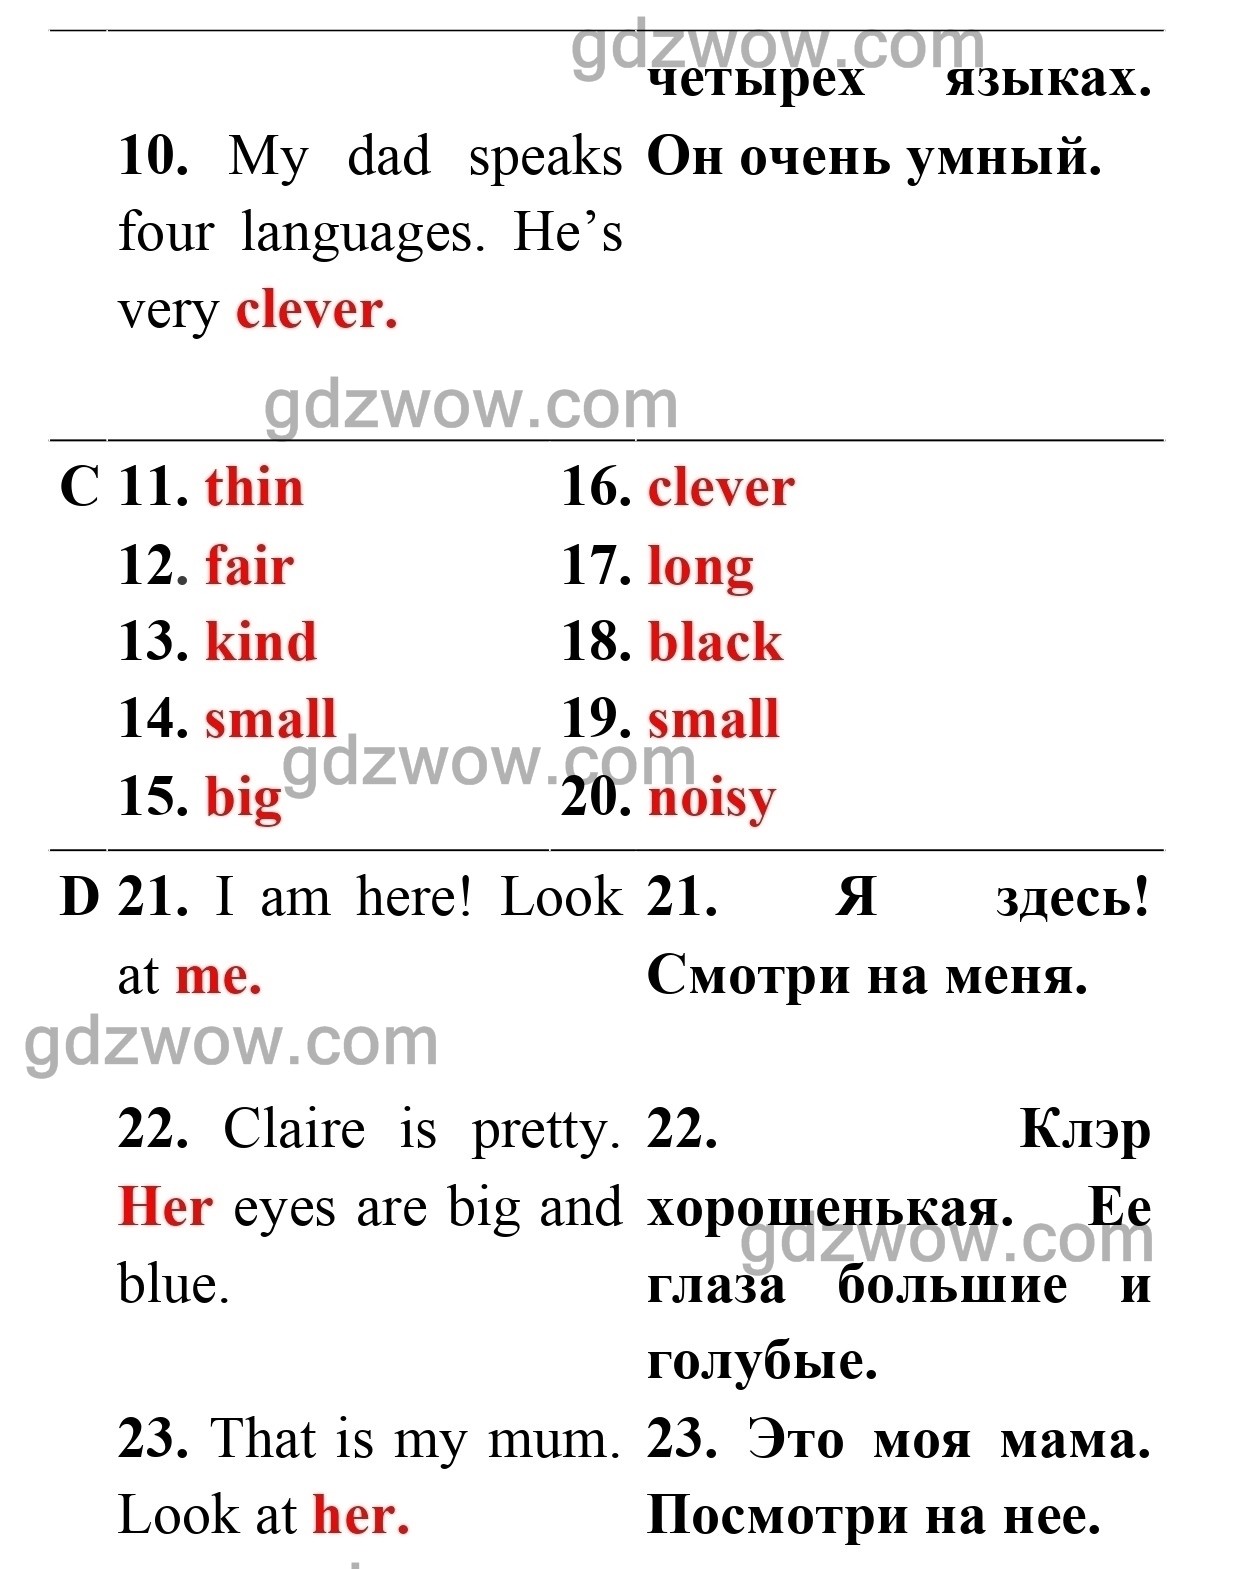 Test 4B — ГДЗ по Английскому языку для 5 класса Test Booklet Spotlight Ваулина, Дули Дженни, Подоляко. Ключи к тестам (решебник) - GDZwow